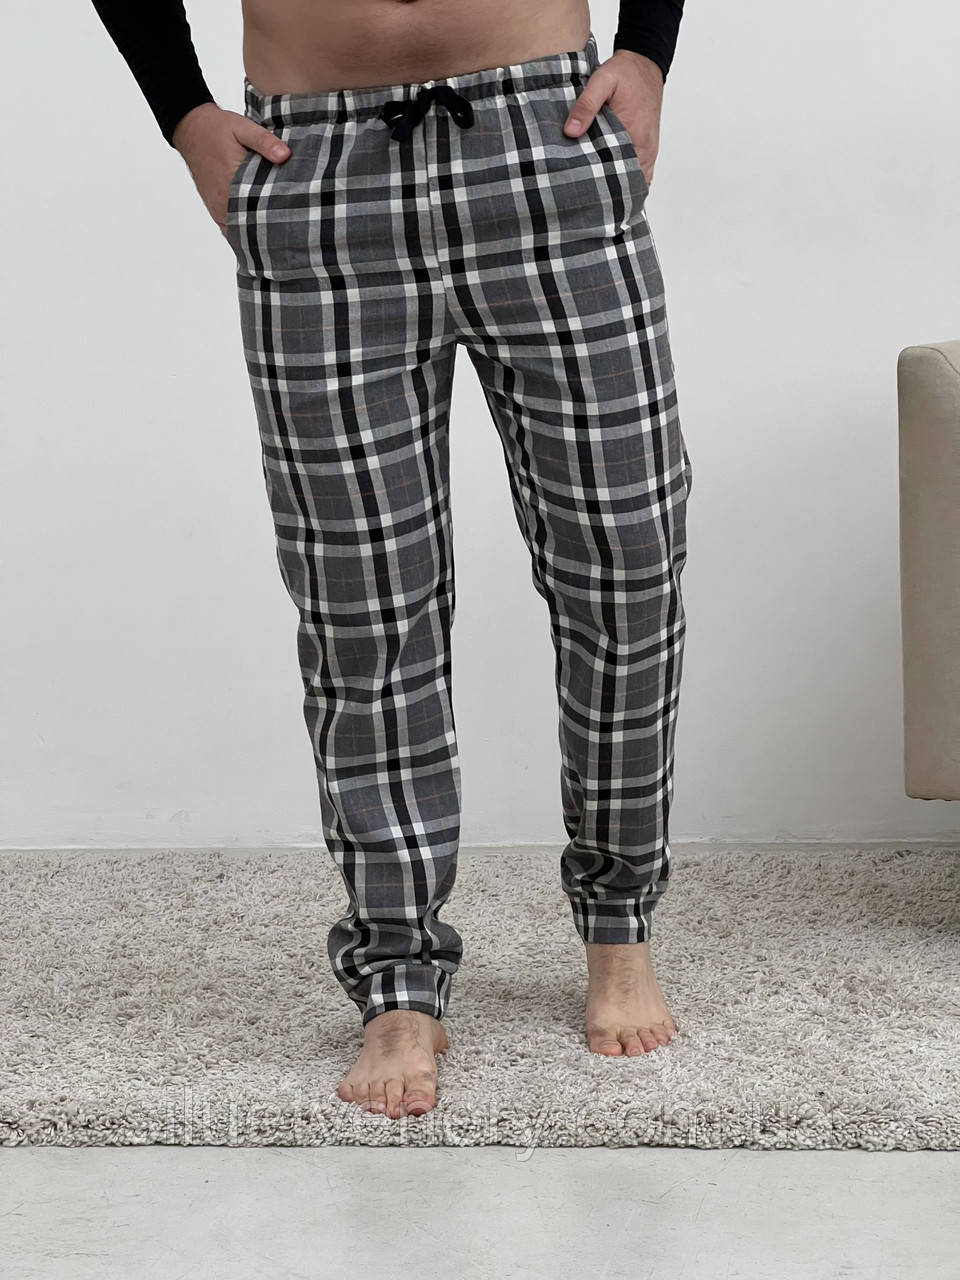 Чоловічі штани піжамні COSY домашні із фланелі в клітину сірі - купить в магазине Силуэт Венеры по цене 750 грн.